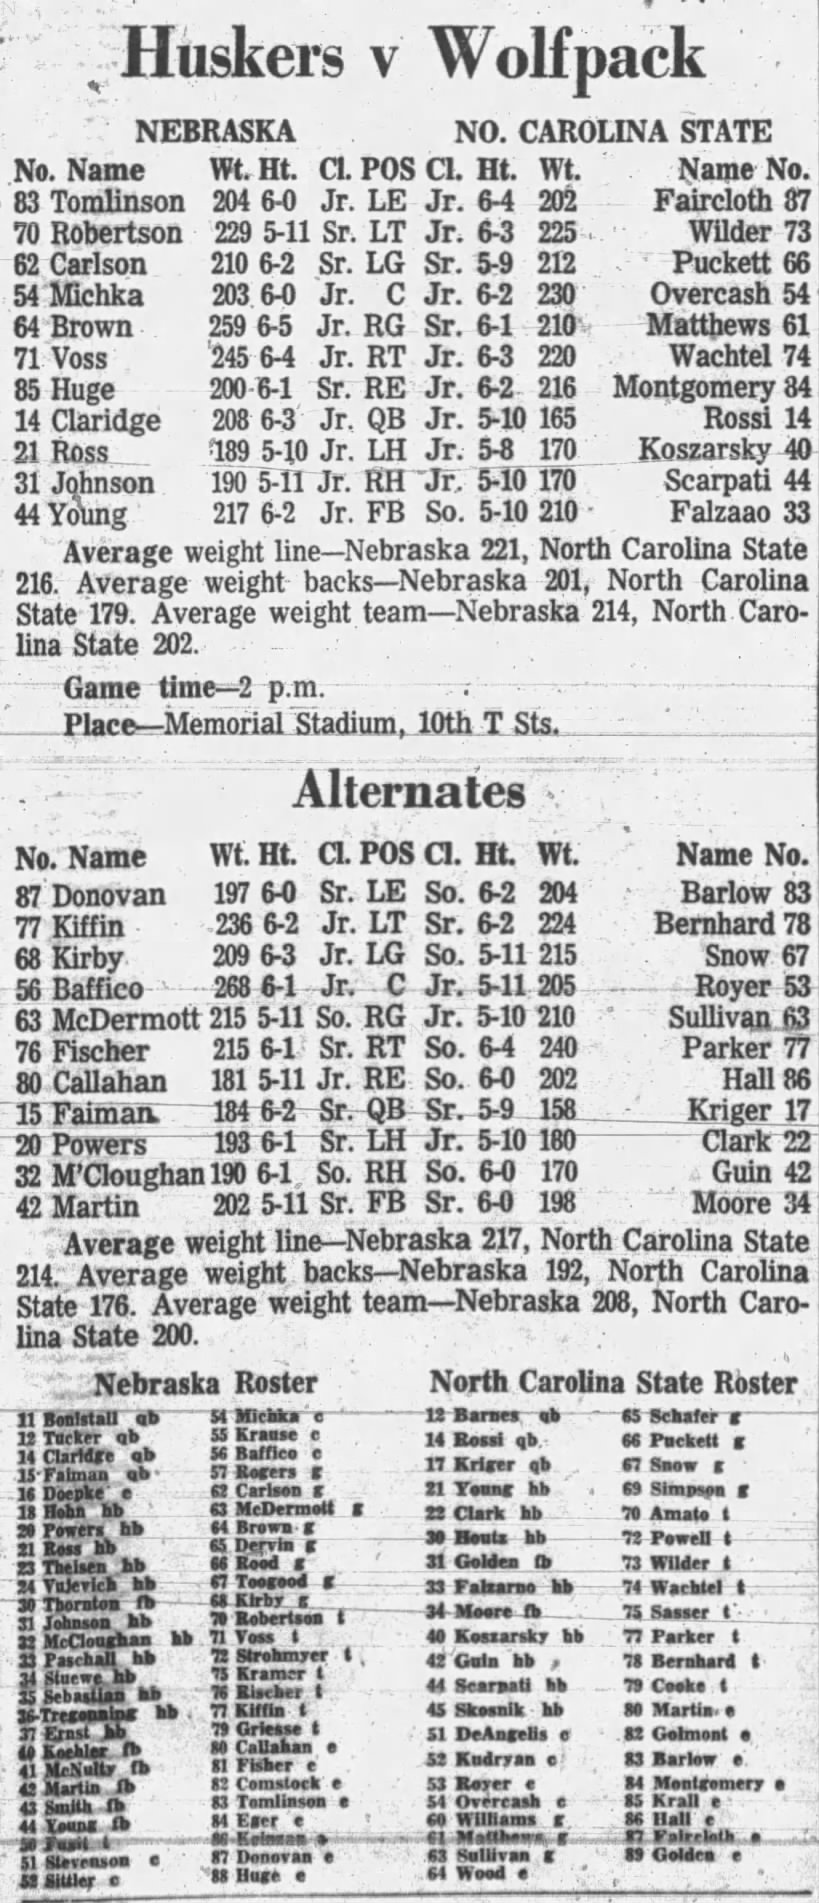 1962 Nebraska-North Carolina State football game lineups